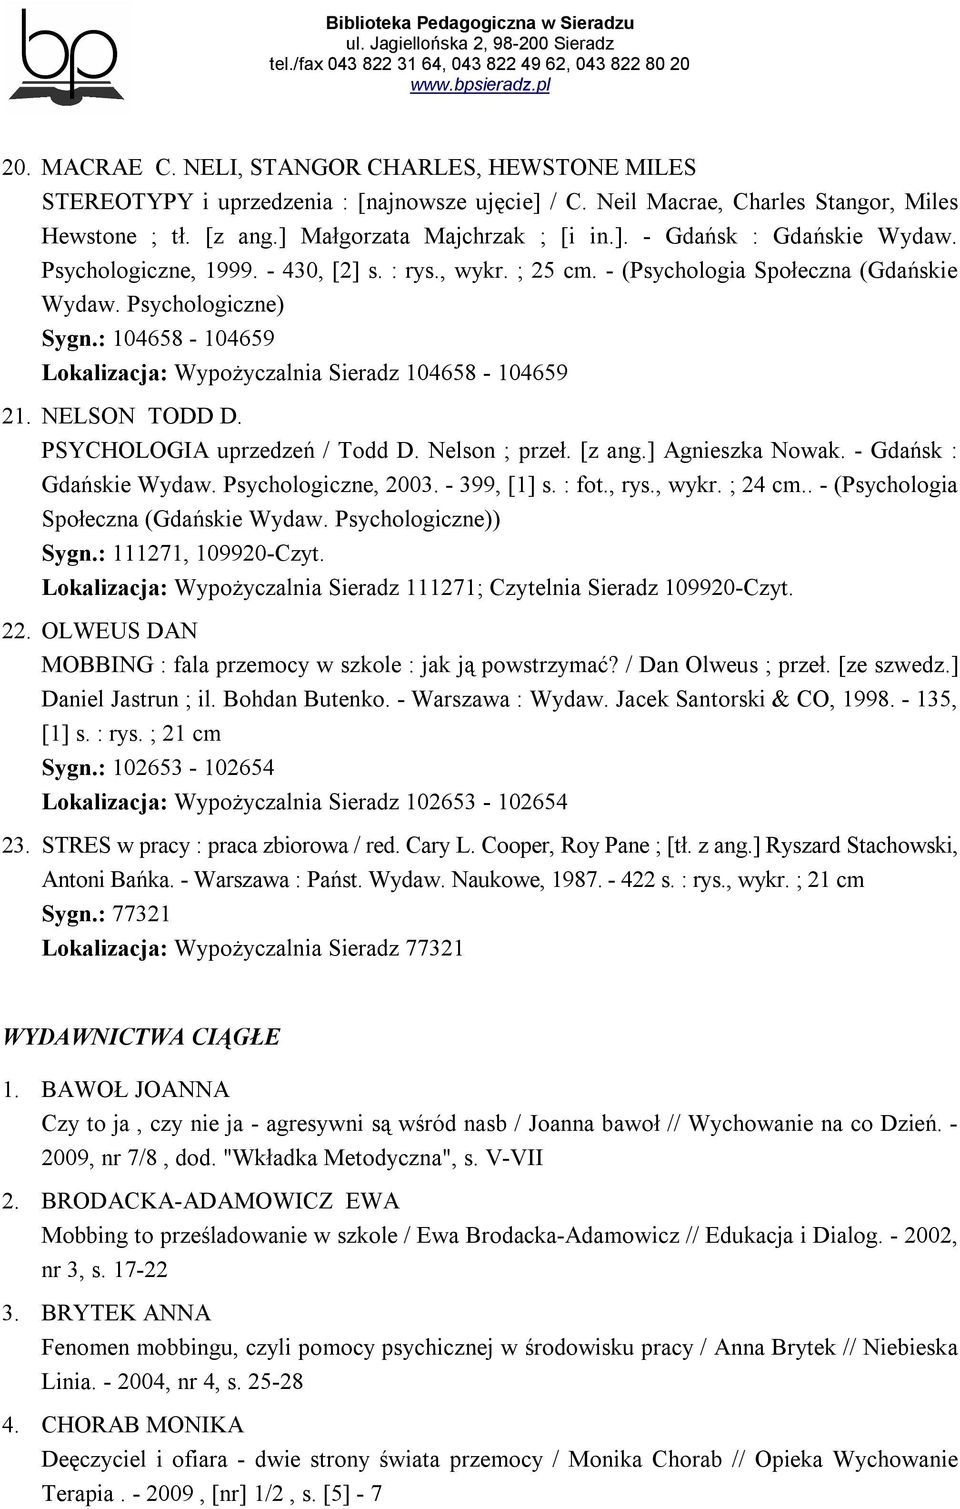 NELSON TODD D. PSYCHOLOGIA uprzedzeń / Todd D. Nelson ; przeł. [z ang.] Agnieszka Nowak. - Gdańsk : Gdańskie Wydaw. Psychologiczne, 2003. - 399, [1] s. : fot., rys., wykr. ; 24 cm.